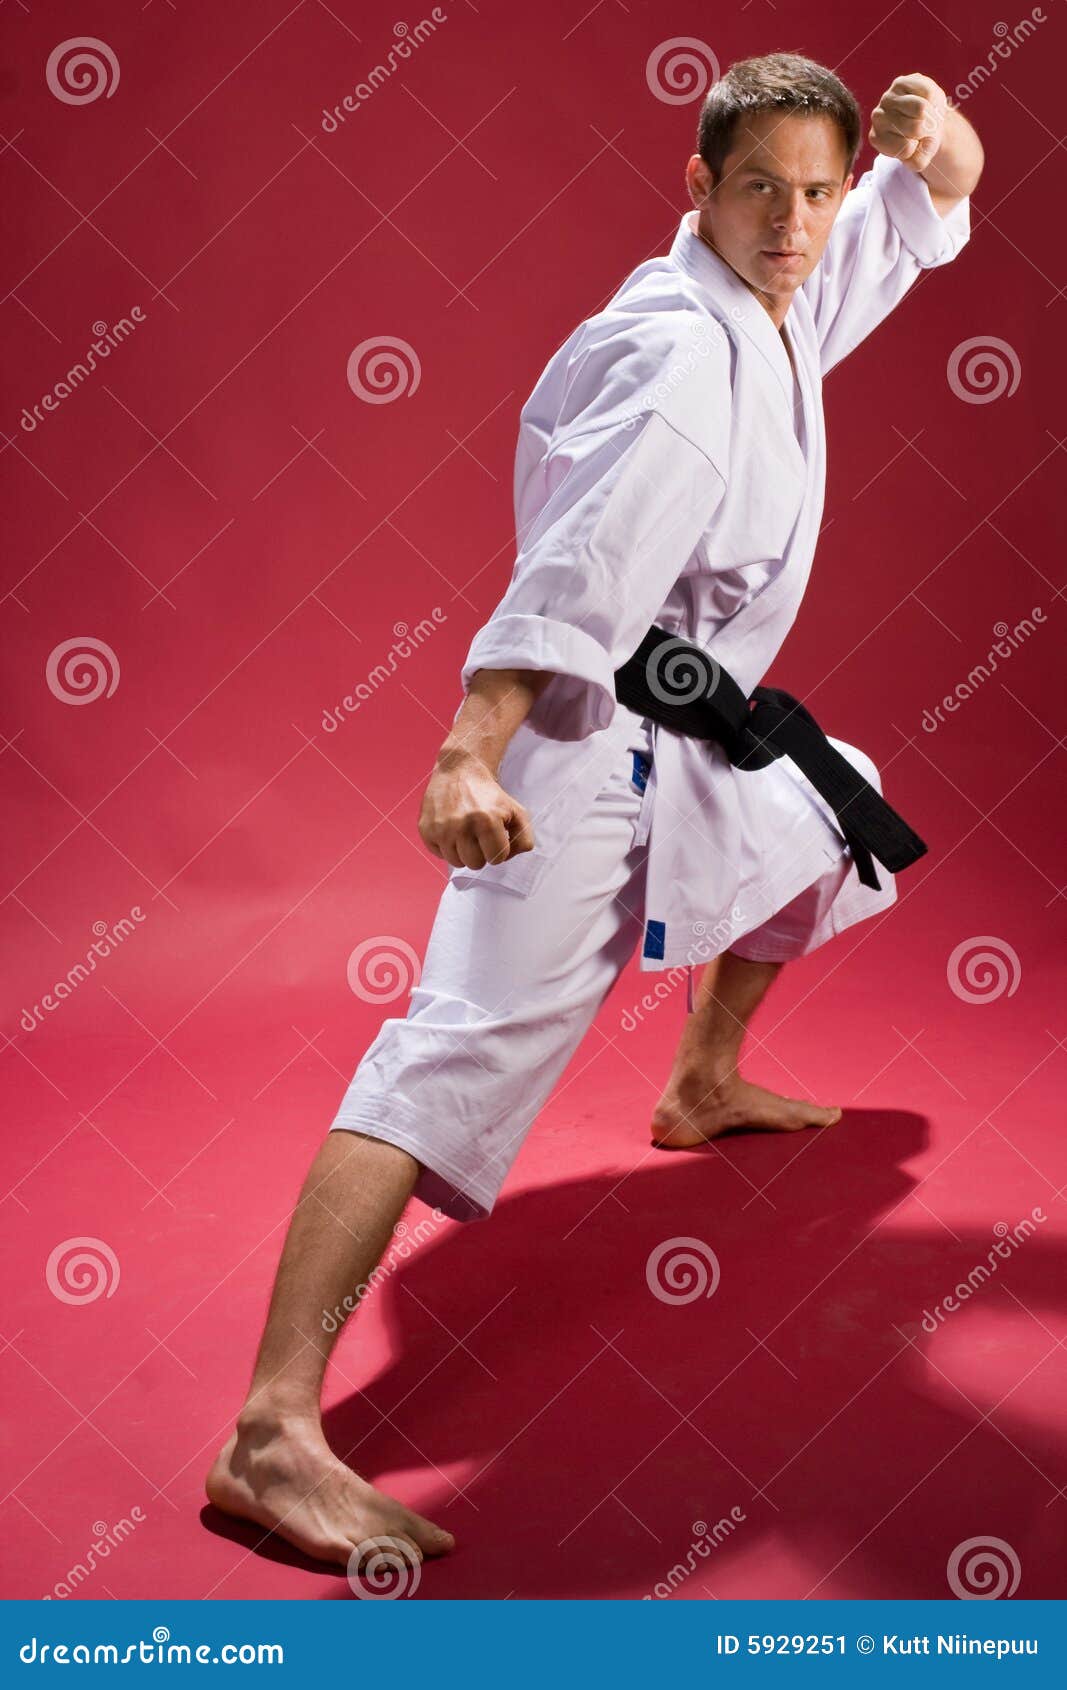 Karate Pose Royalty-Free Stock Photography | CartoonDealer.com #5919851